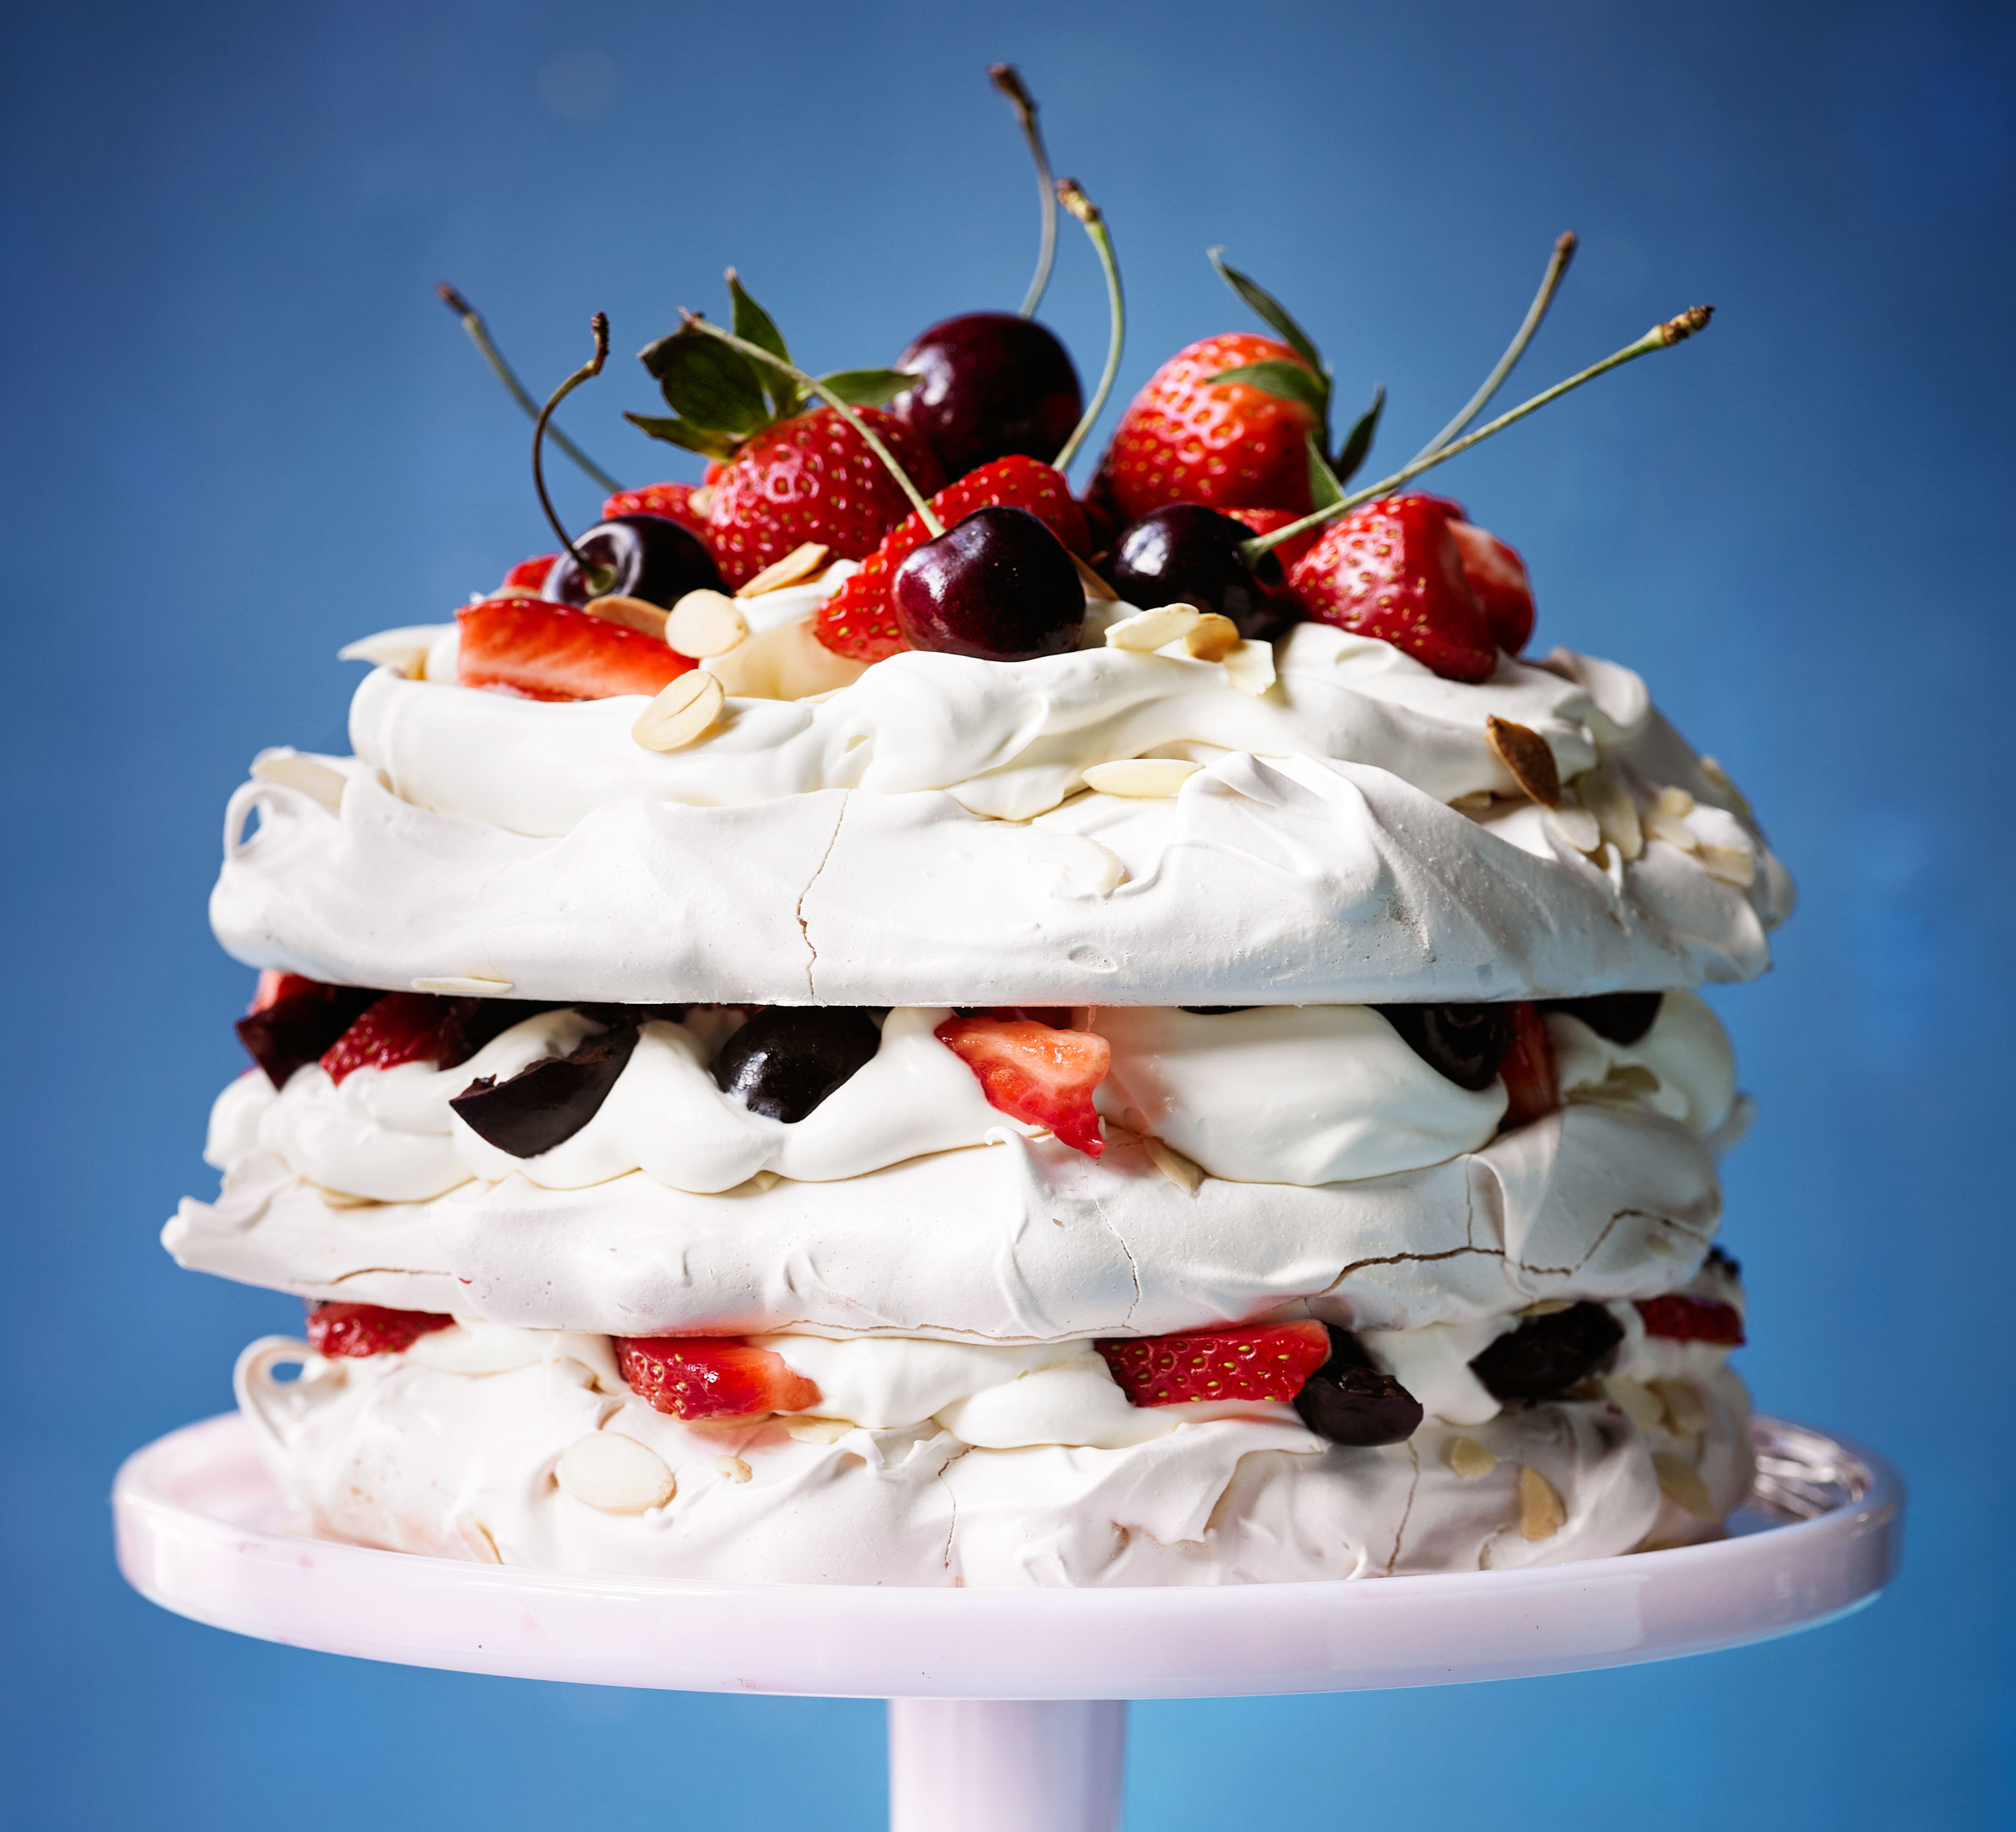 Amaretto meringue cake with strawberries & cherries